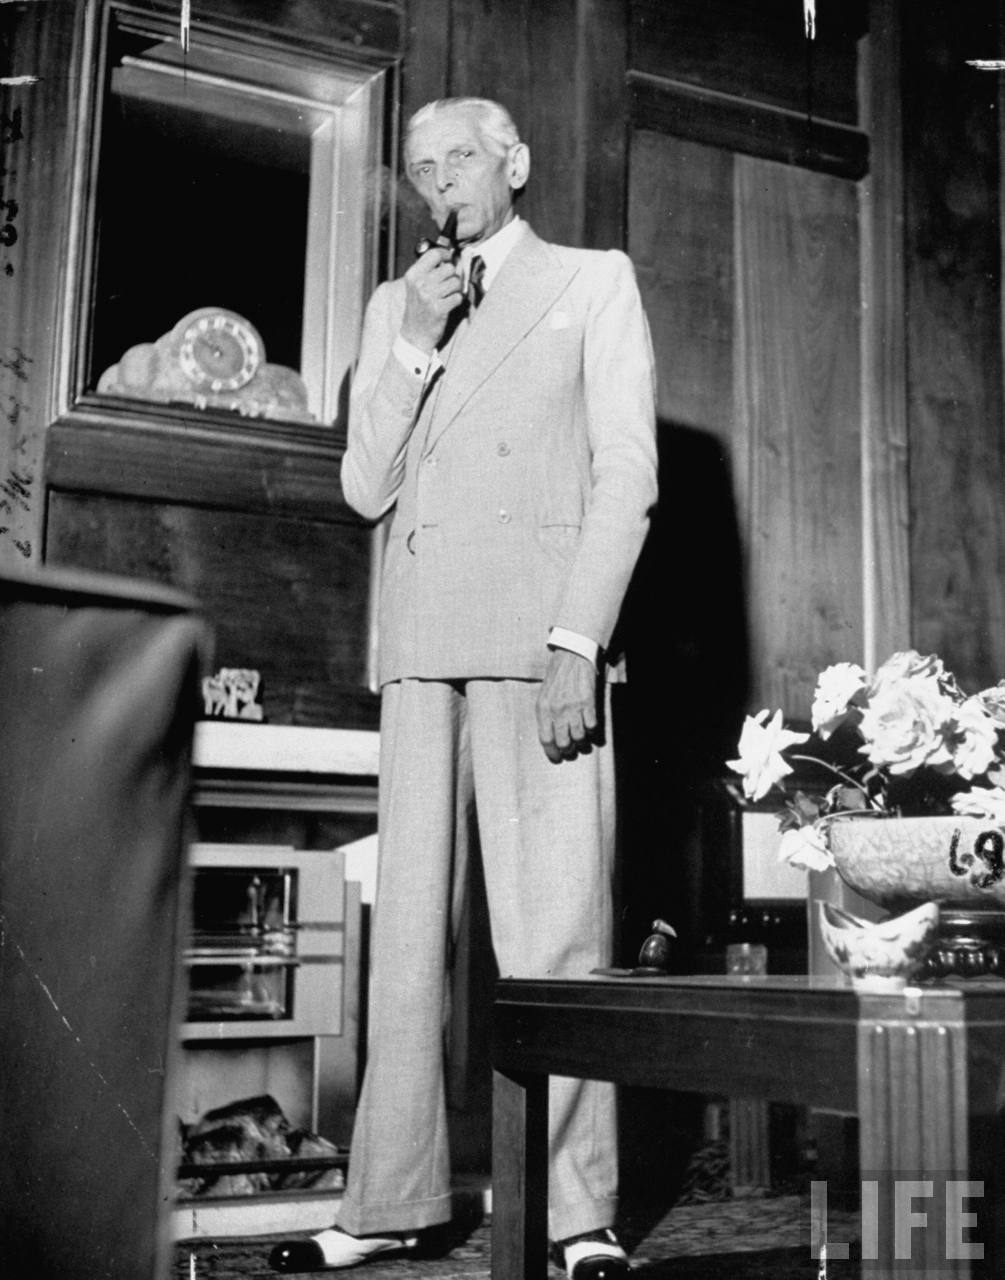 Portrait of Mohammed Ali Jinnah